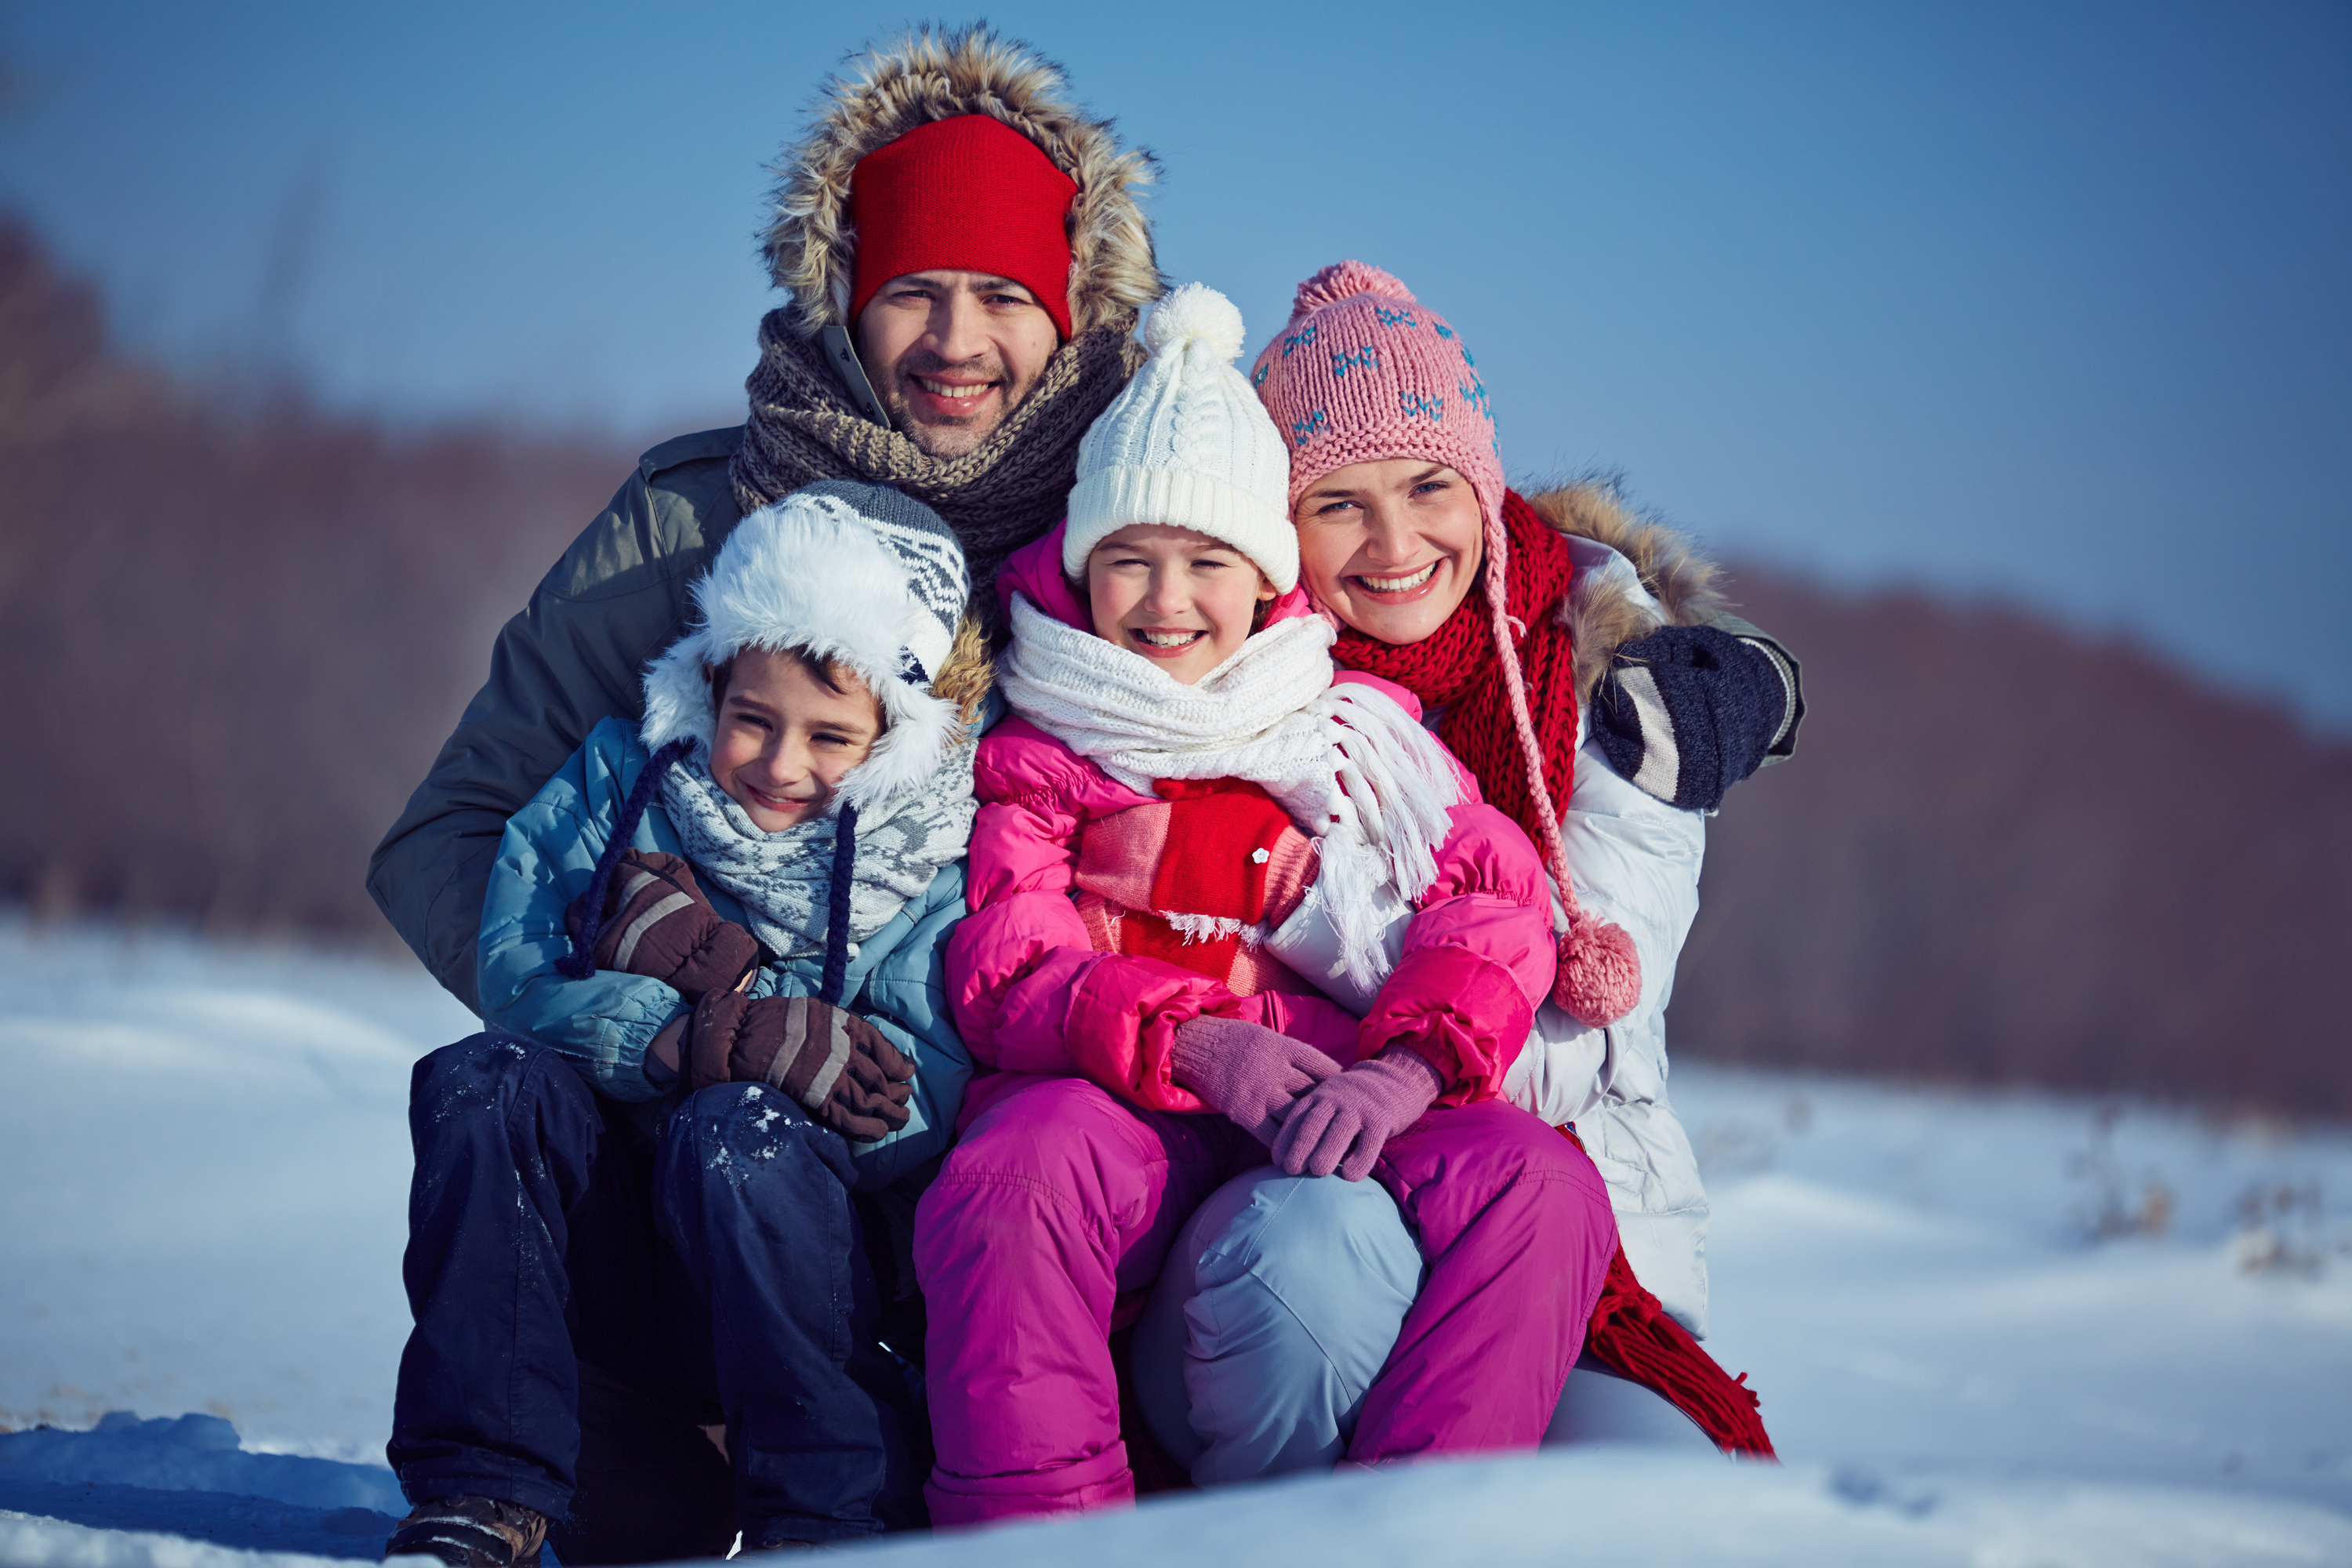 Детям нравится проводить зимние каникулы за городом. Бездымное топливо избавляет от лишних хлопот и рутины в праздники